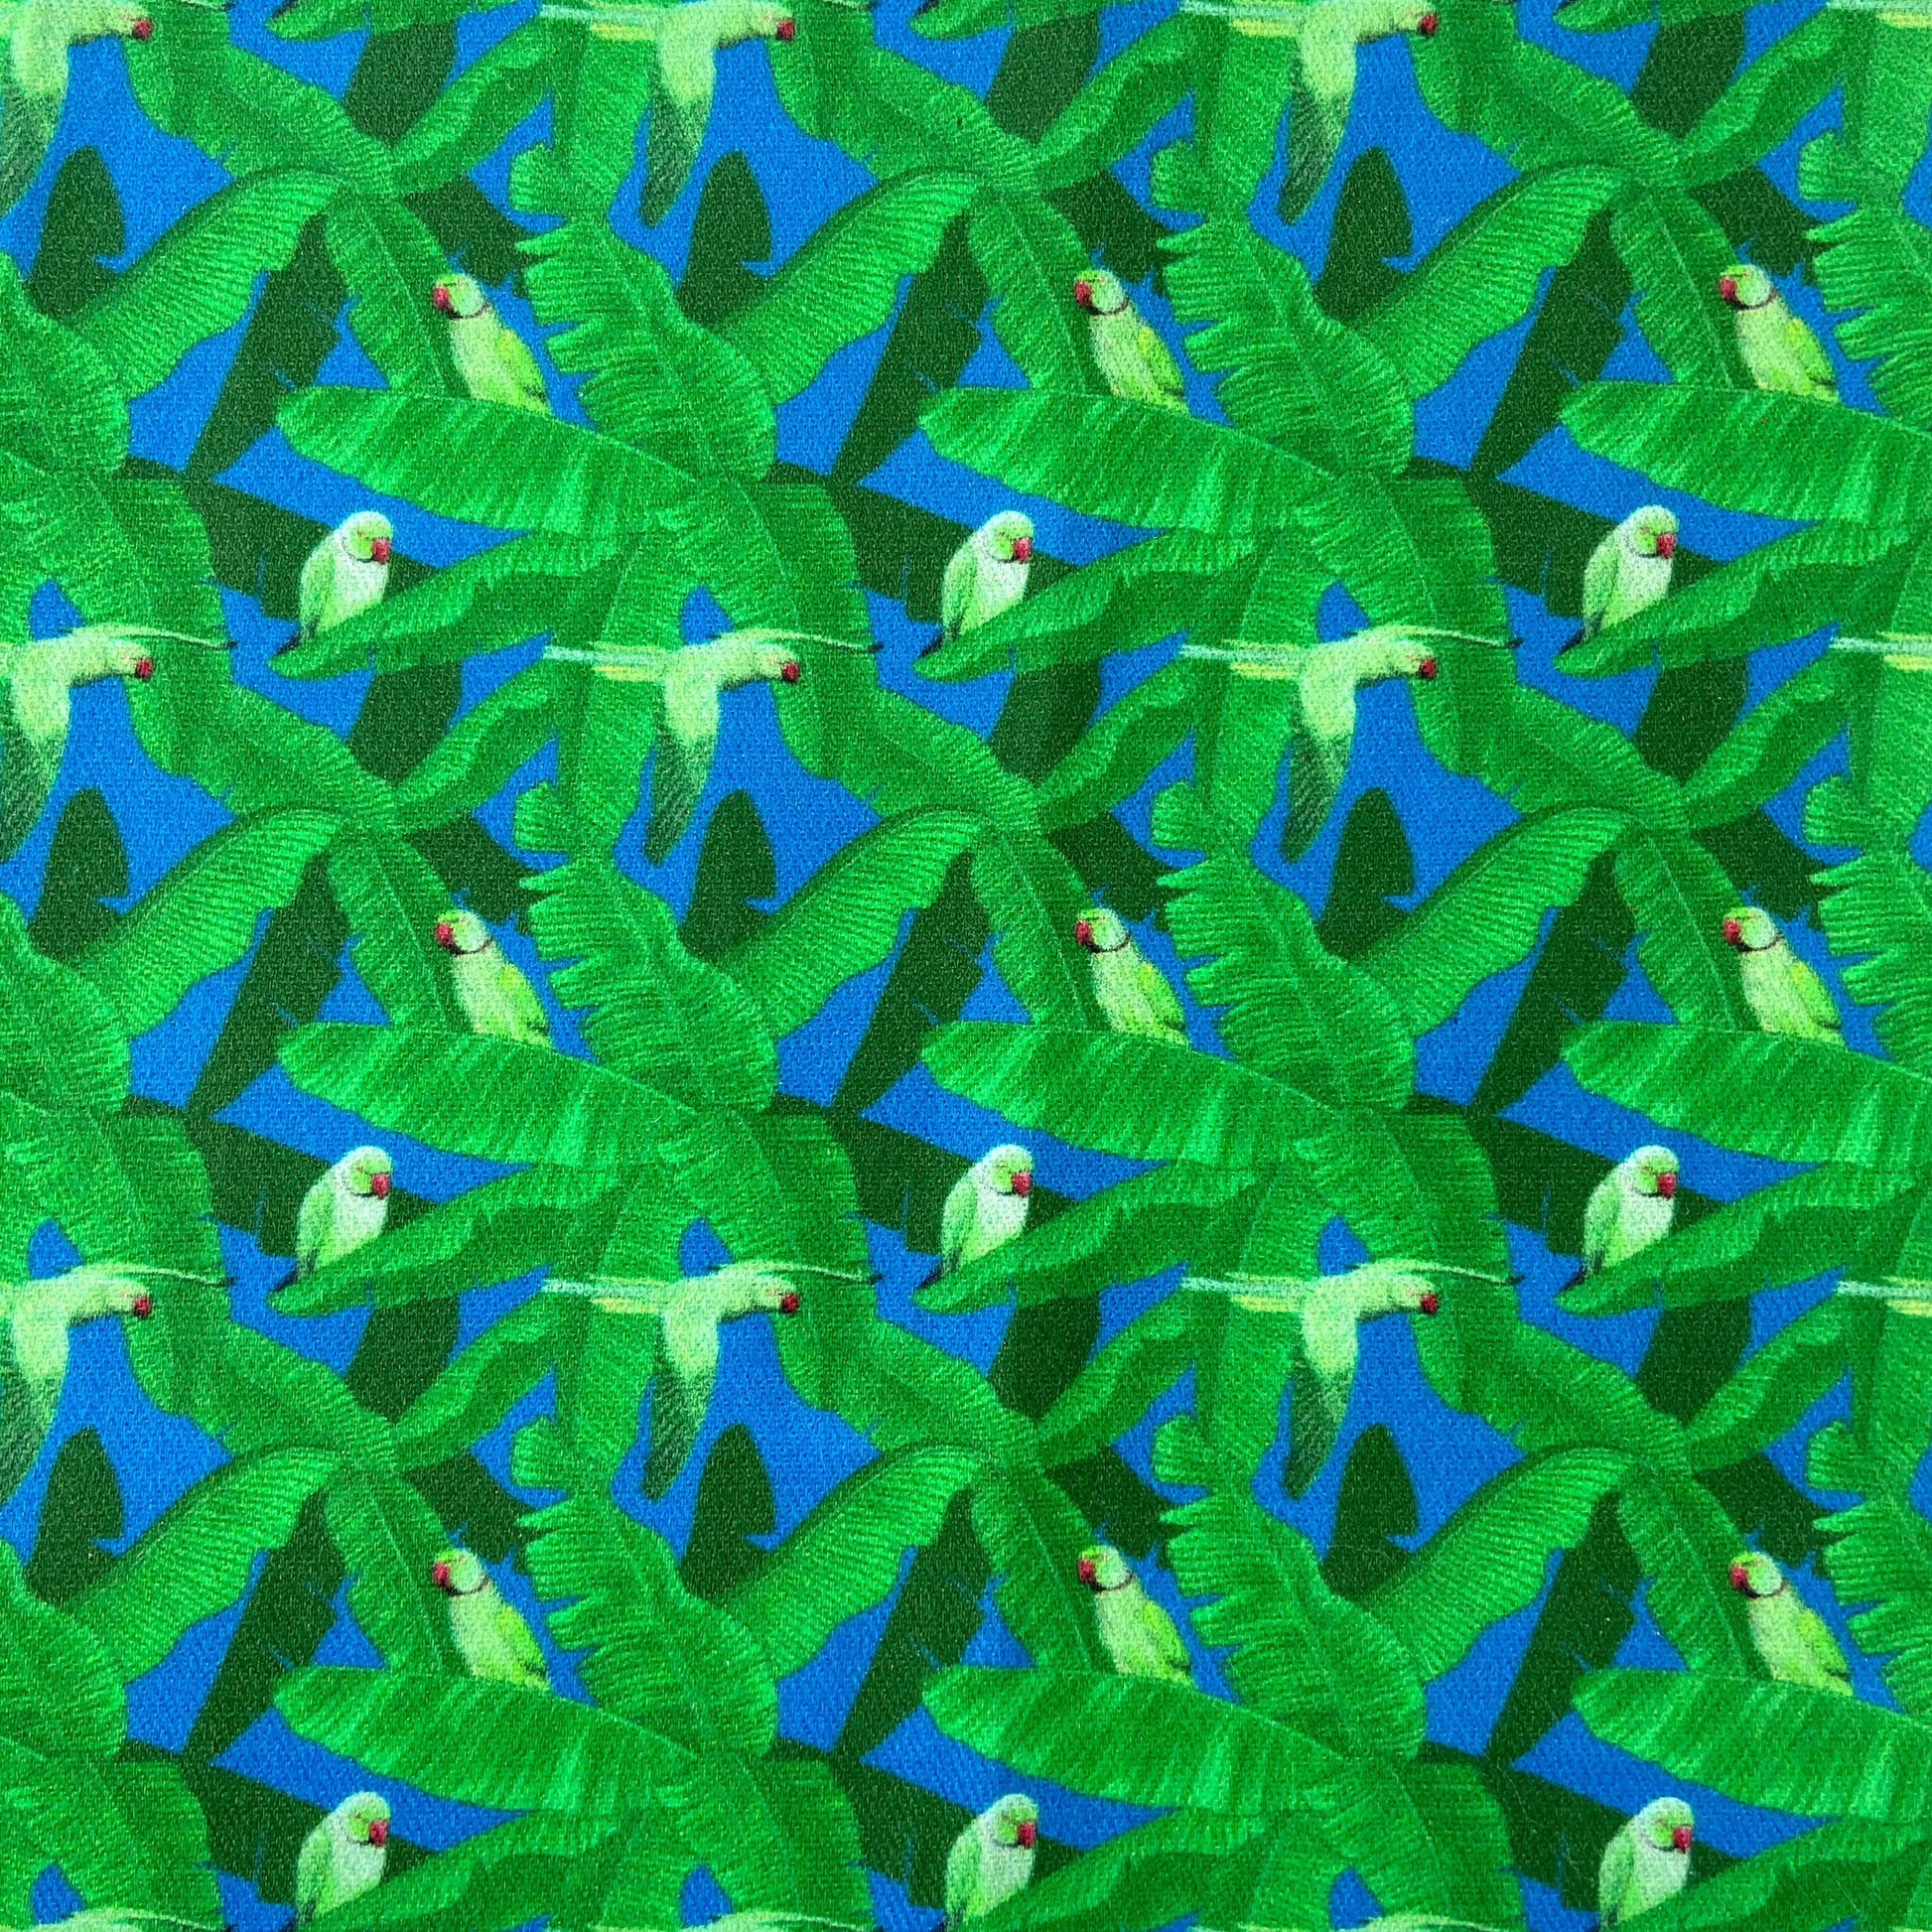 Sergé de coton imprimé motif perroquet jungle babniers vert vif bleu vif turquoise vert pomme oiseaux ara bec rouge coloré bleu roi moderne  